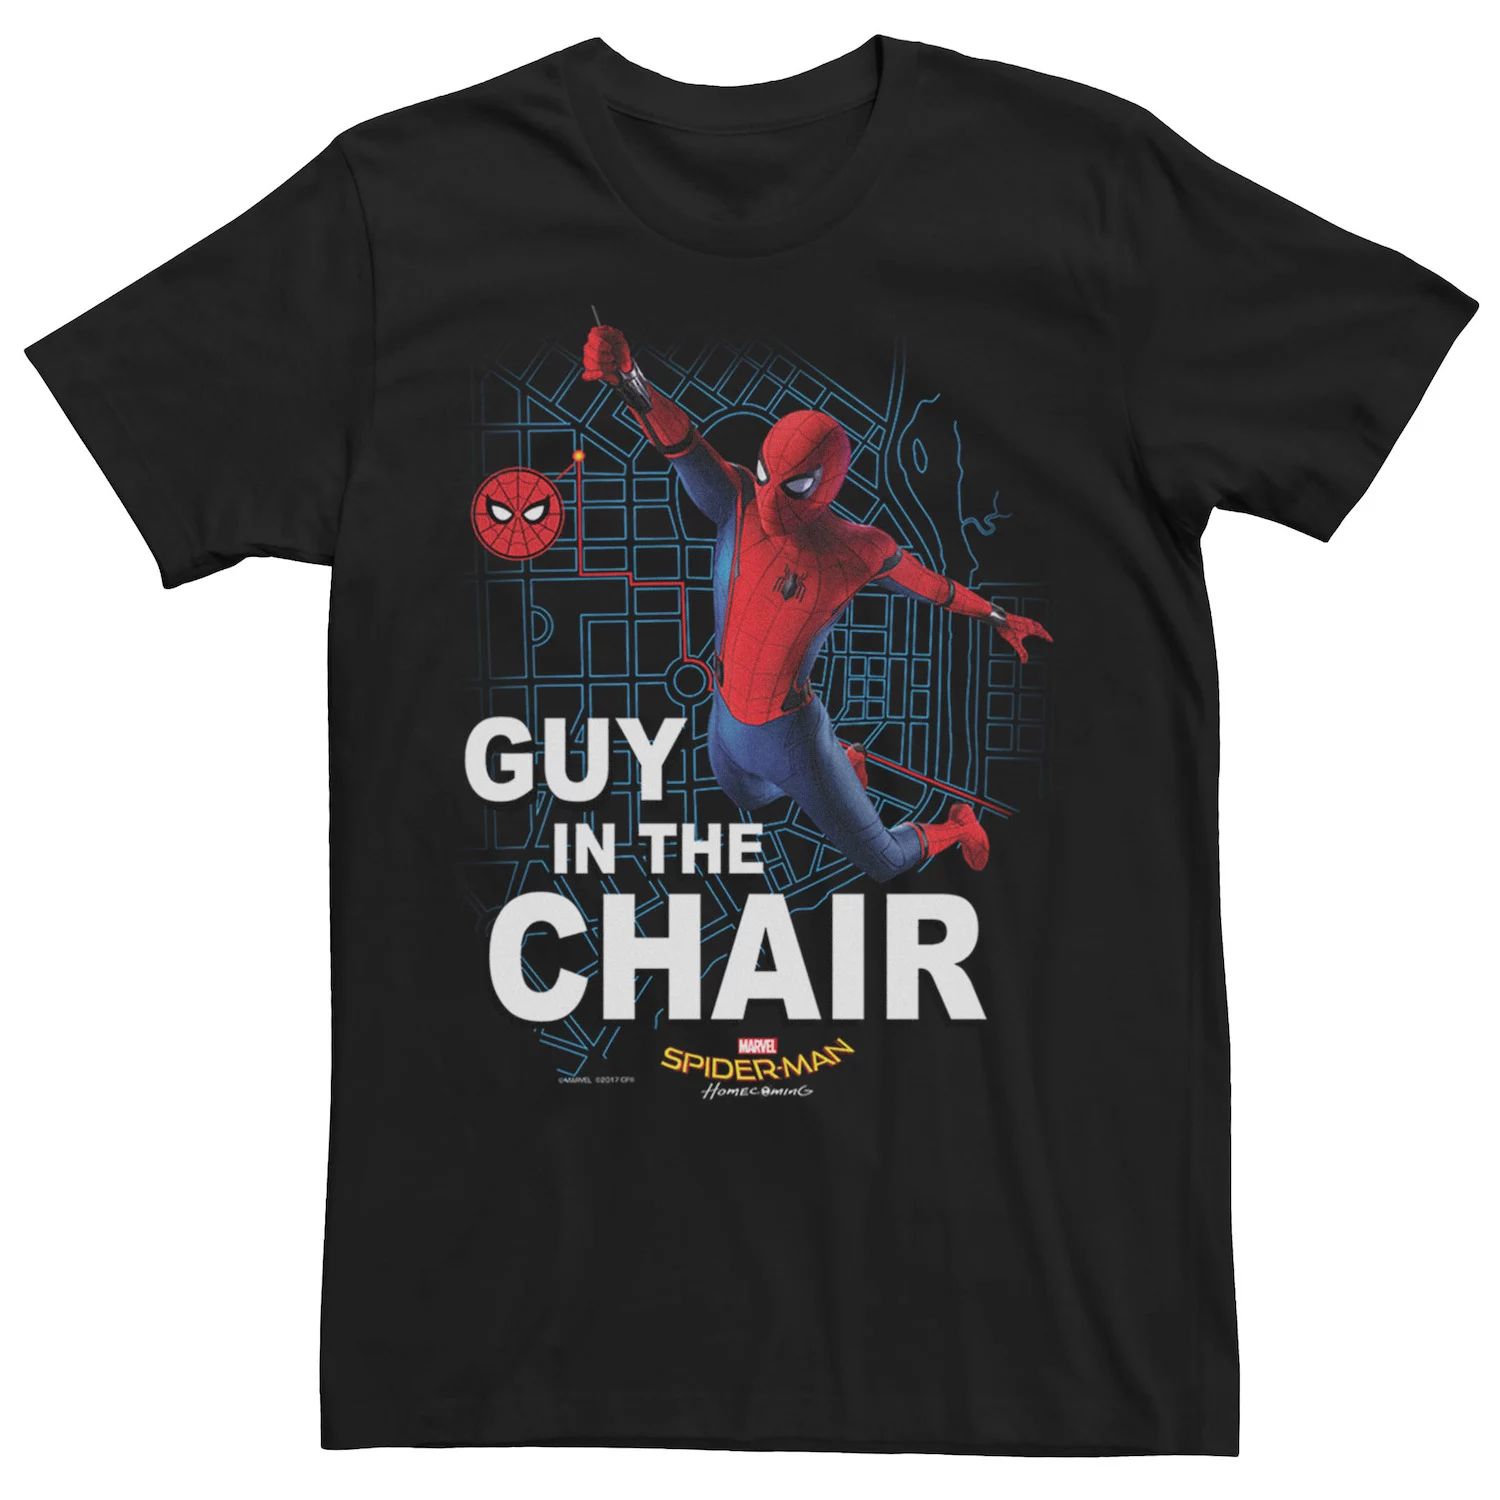 Мужская футболка с рисунком «Человек-паук Marvel: Возвращение домой парень в кресле» человек паук возвращение домой dvd